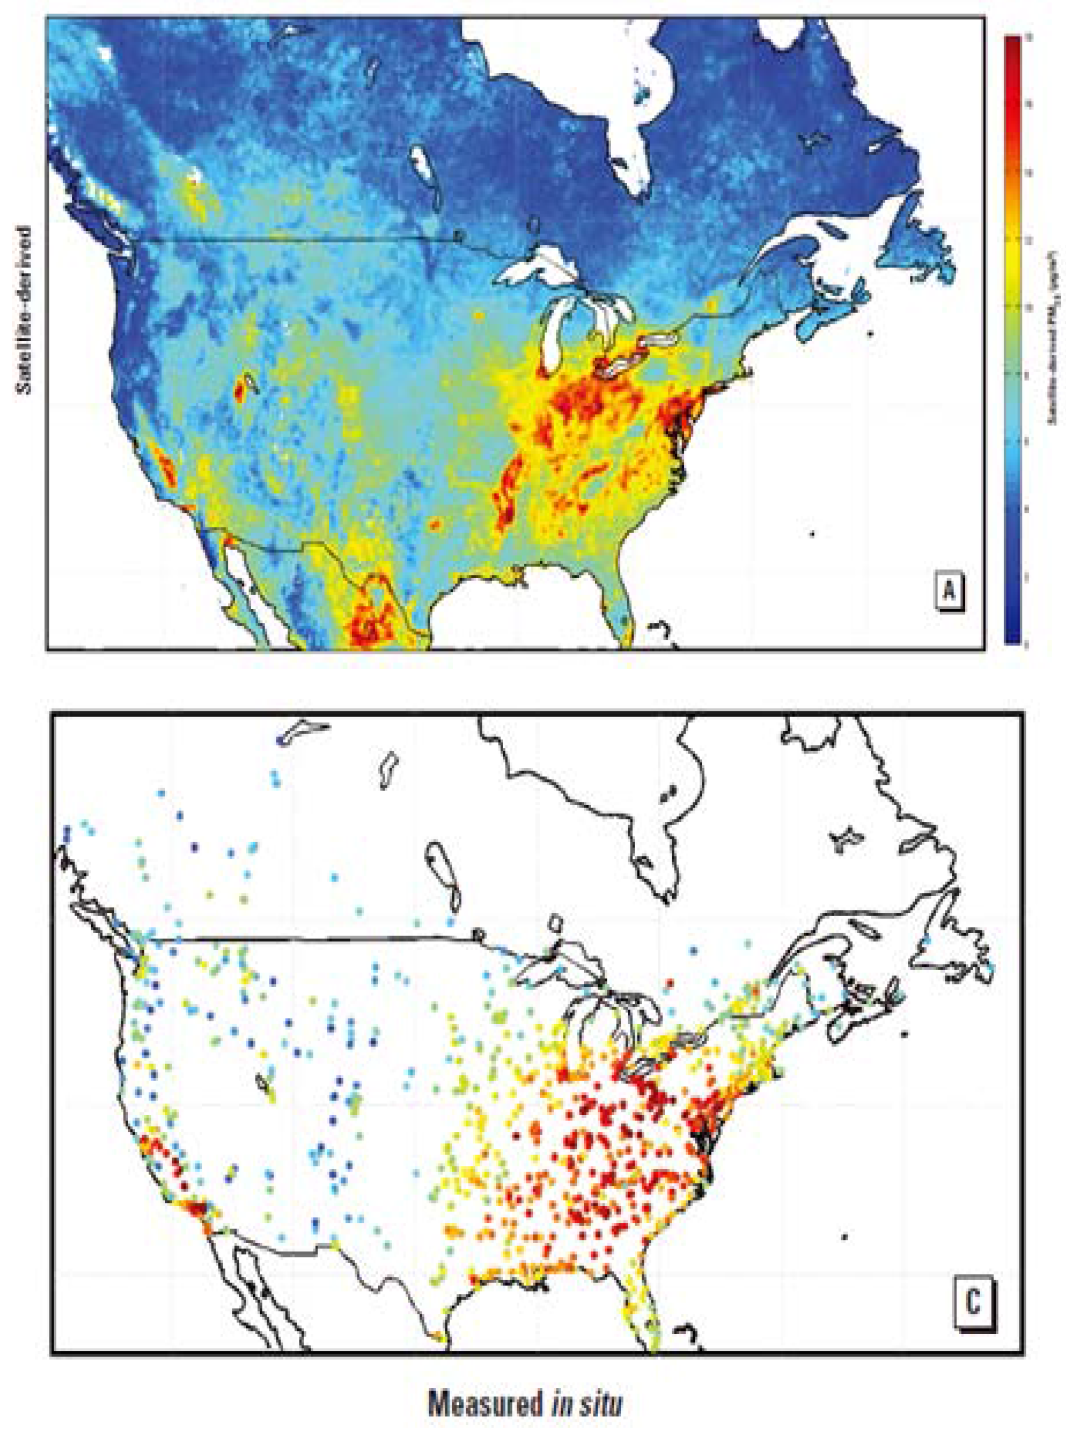 미국 IMPROVE에서 관측한 평균 PM2.5 농도 (아래) 와 위성으로부터 산출한 PM10 (위) (Van Donkelaar et al., 2010)